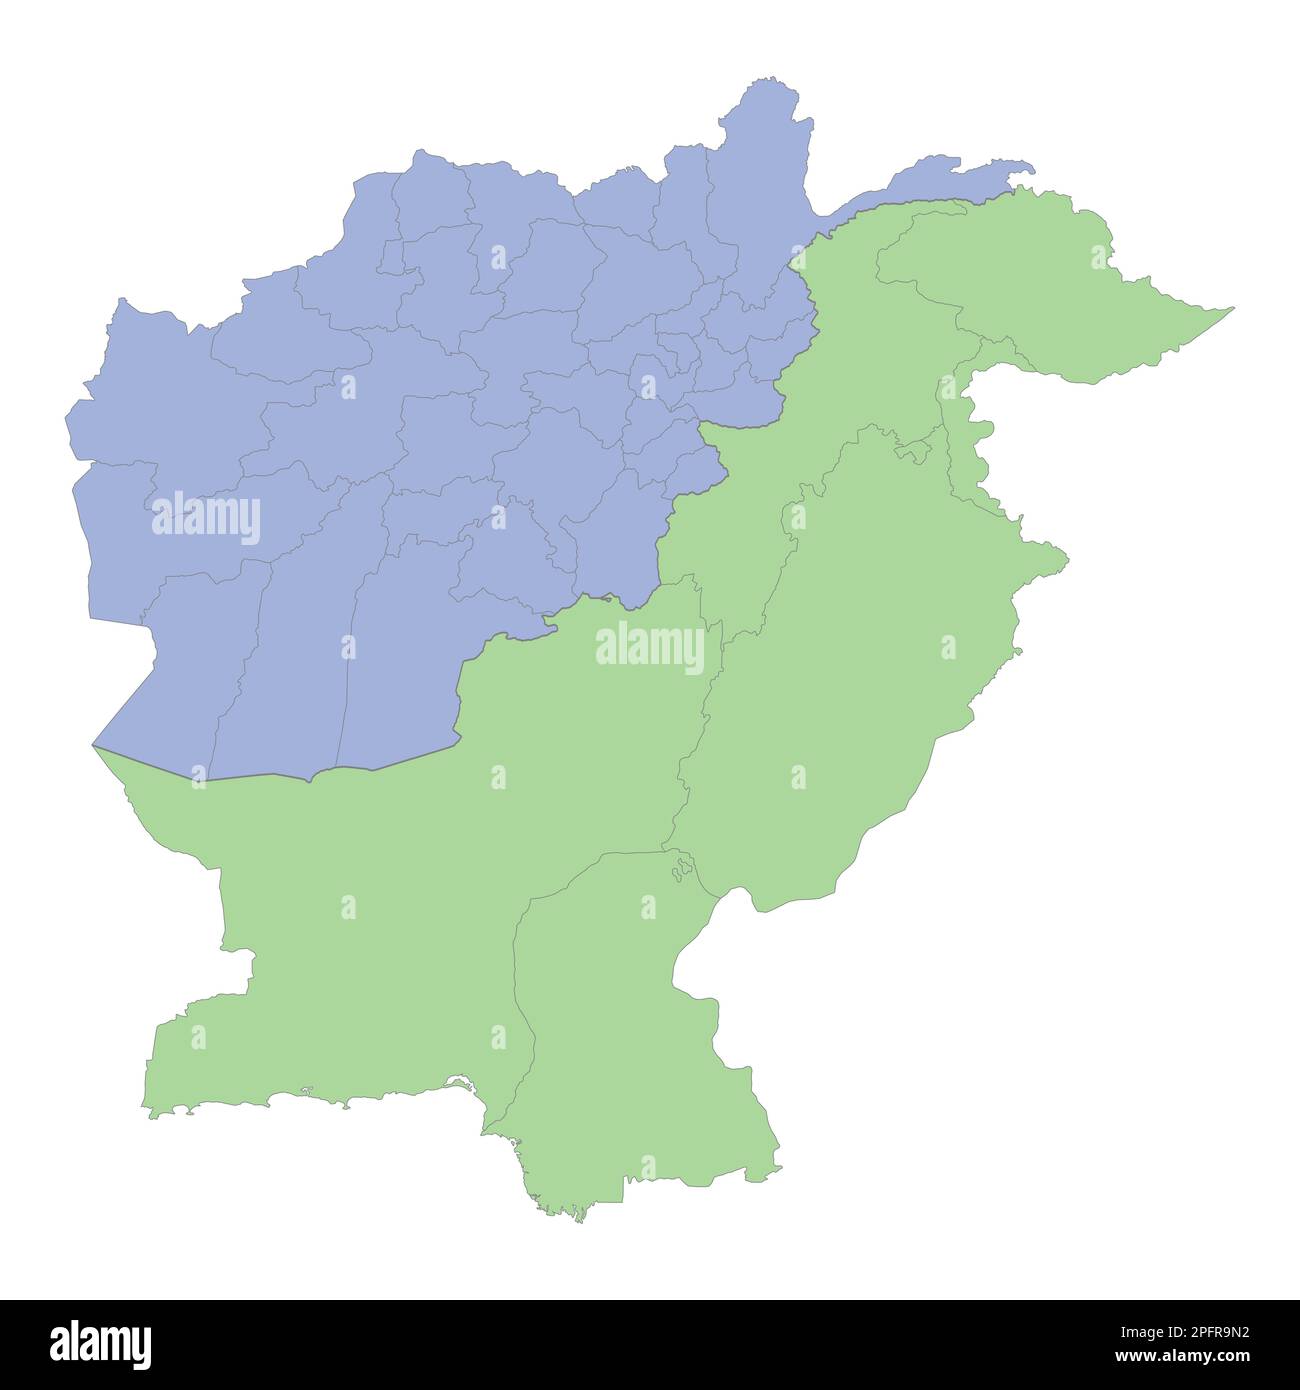 Mappa politica di alta qualità del Pakistan e dell'Afghanistan con i confini delle regioni o delle province. Illustrazione vettoriale Illustrazione Vettoriale